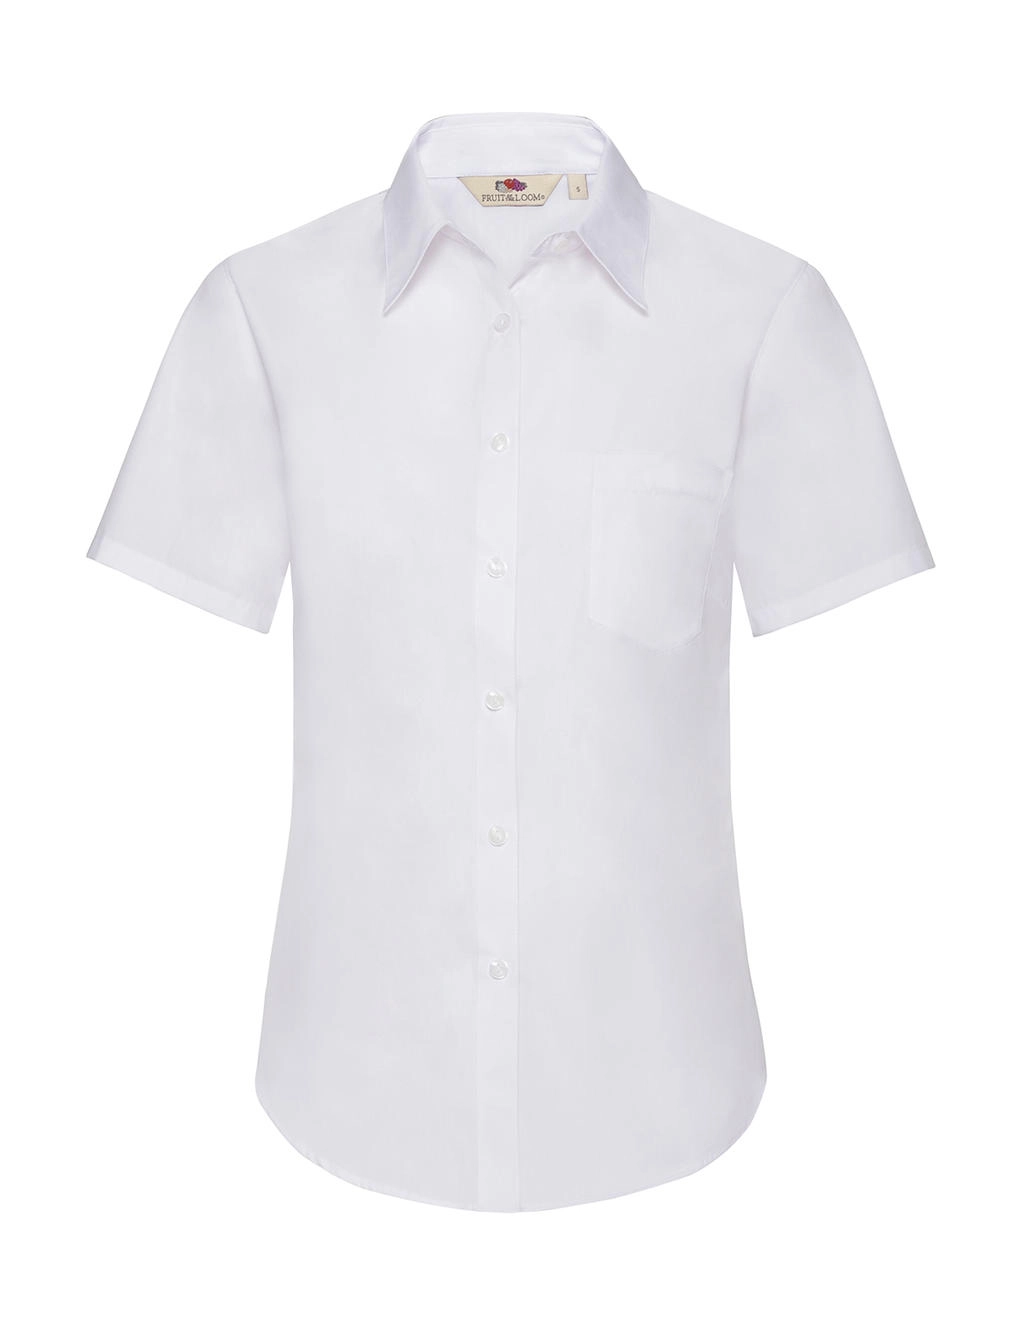 Ladies` Poplin Shirt zum Besticken und Bedrucken in der Farbe White mit Ihren Logo, Schriftzug oder Motiv.